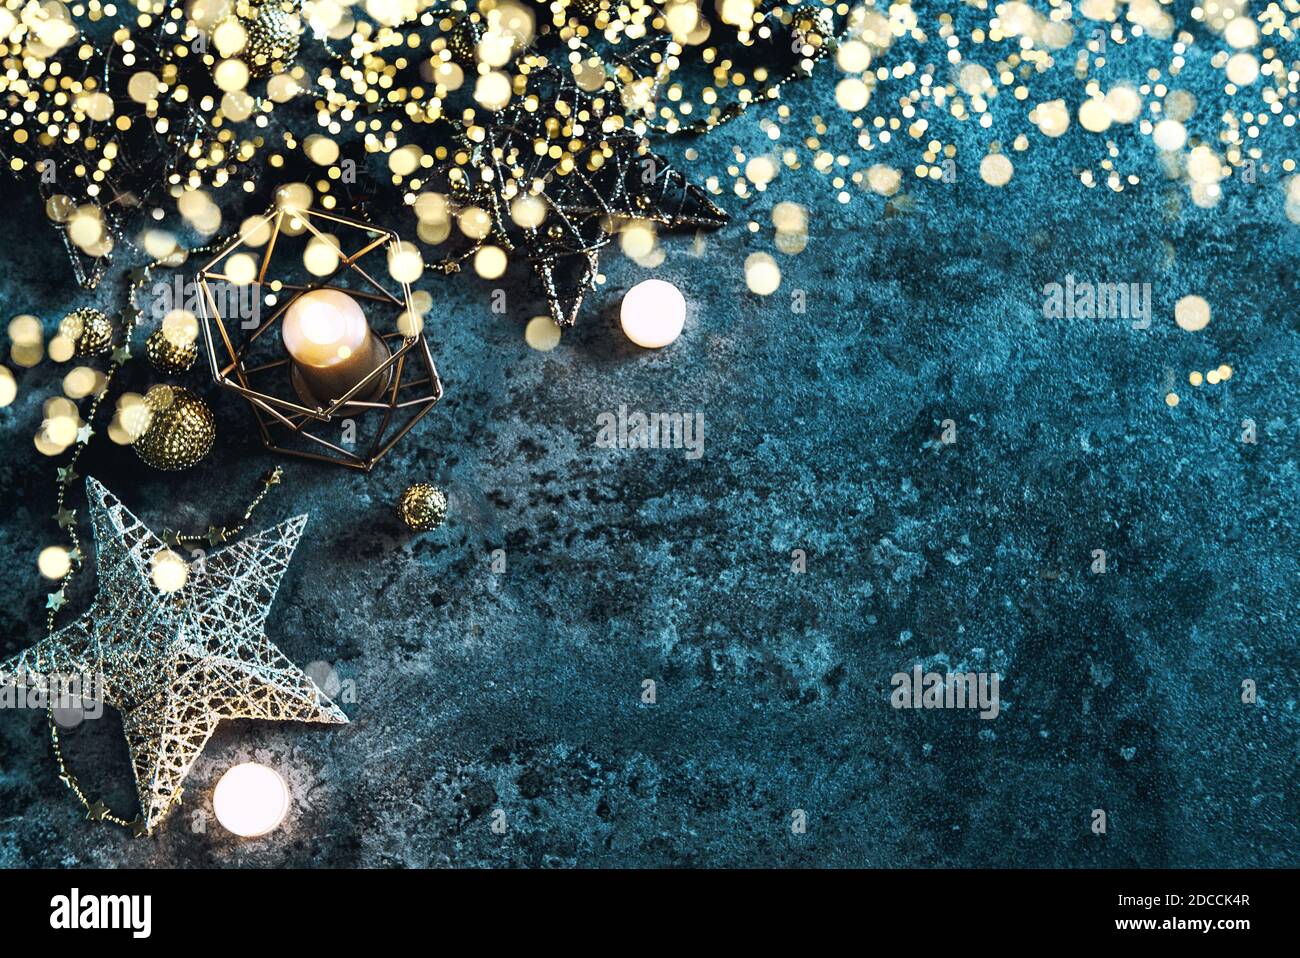 Noël fond étoiles, bougies et lumières décoration Banque D'Images